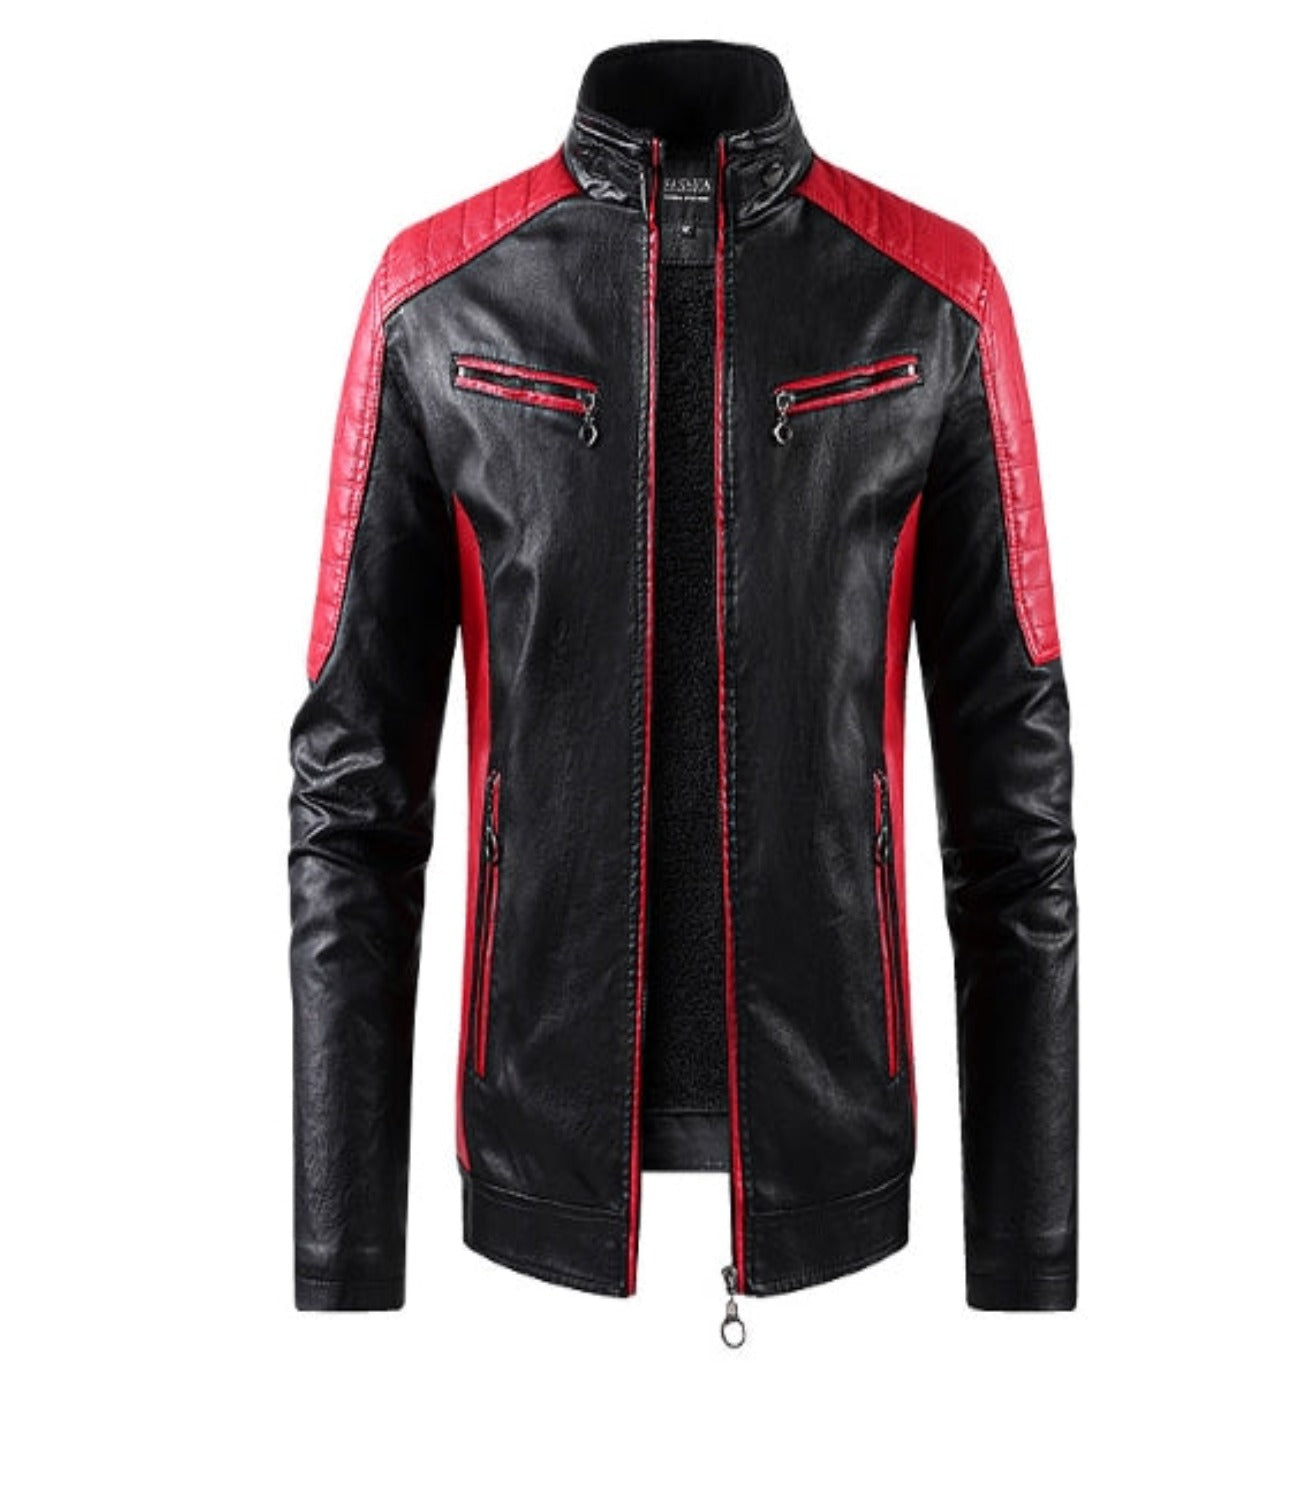 Men’s Black & Red Biker Leather Jacket